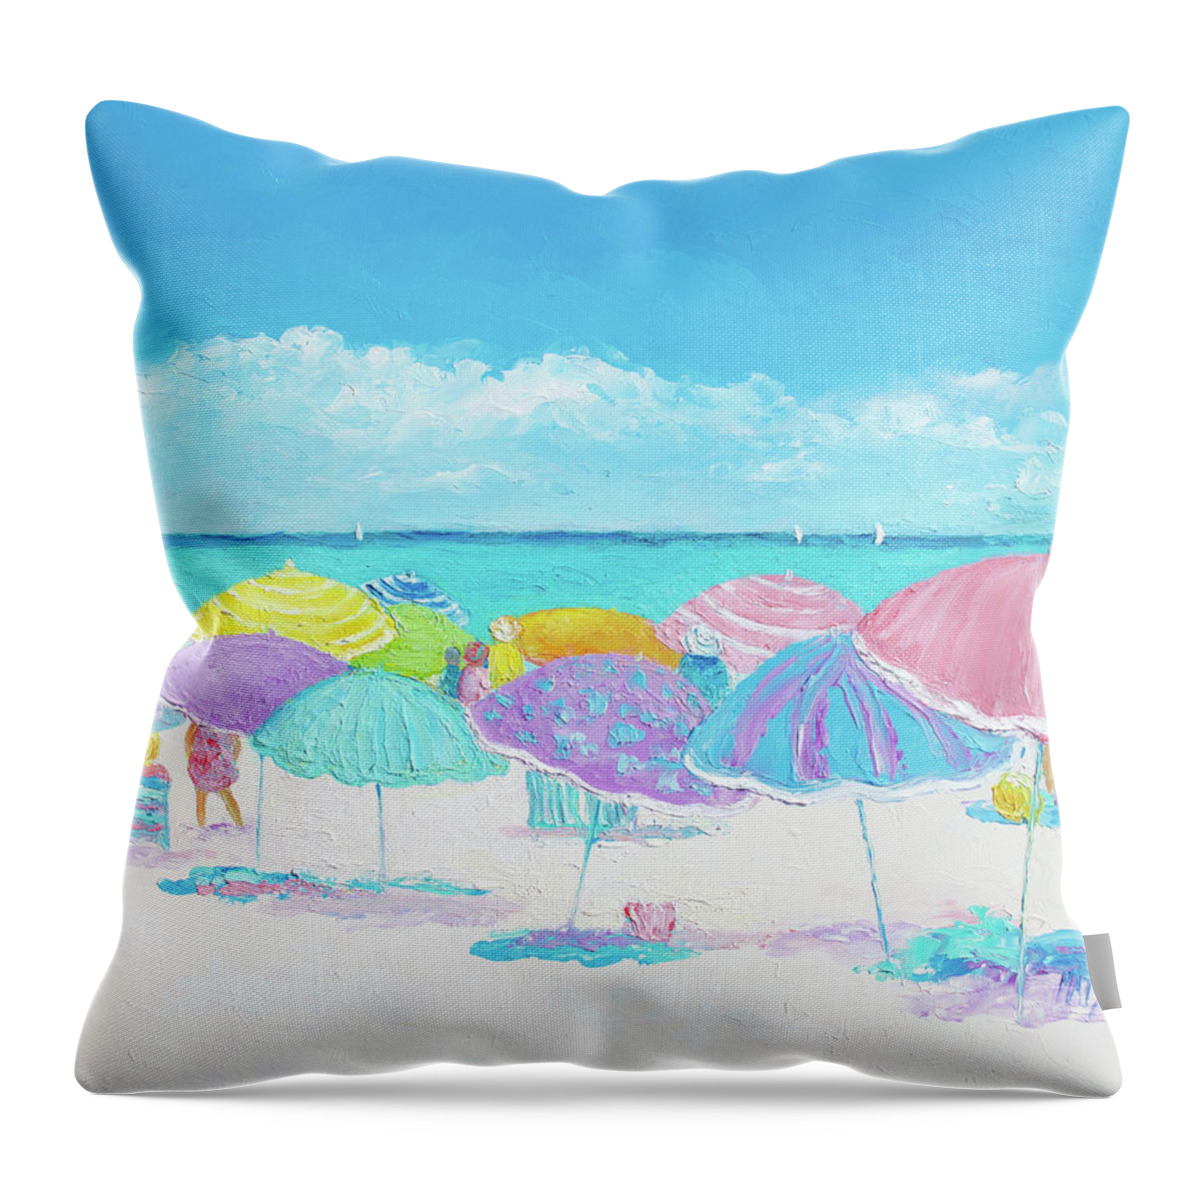 Beach Throw Pillow featuring the painting A Summer Day Drifts Away, beach scene by Jan Matson